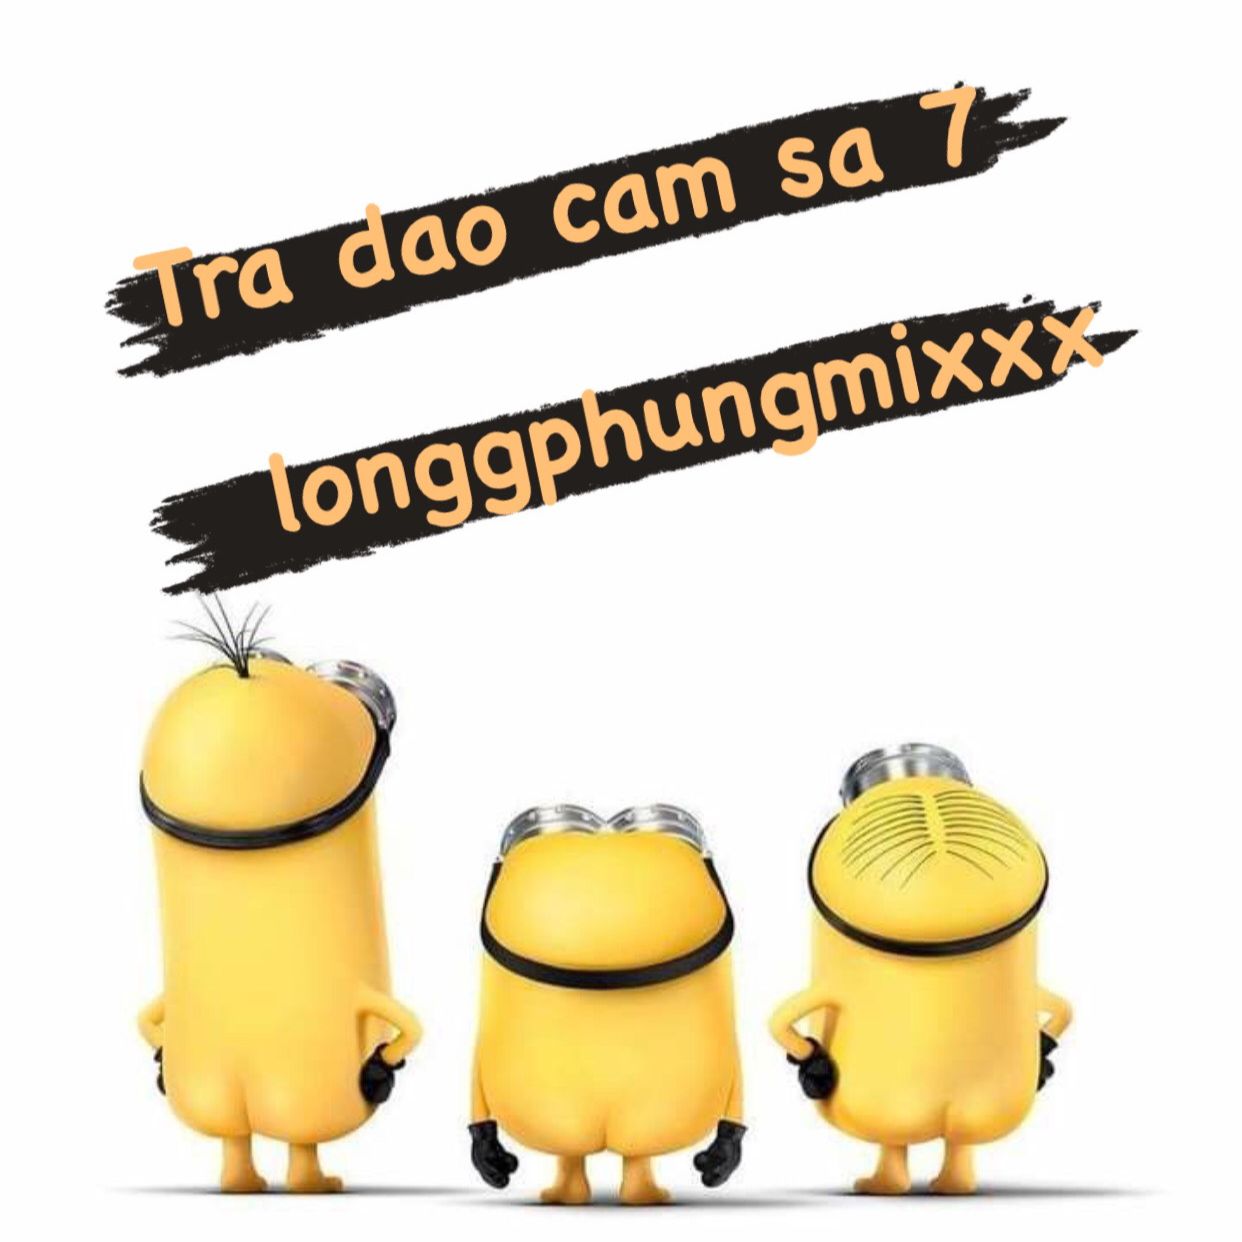 ດາວໂຫລດ Tra Dao Cam Sa 7 - 132 longgphungmixxx